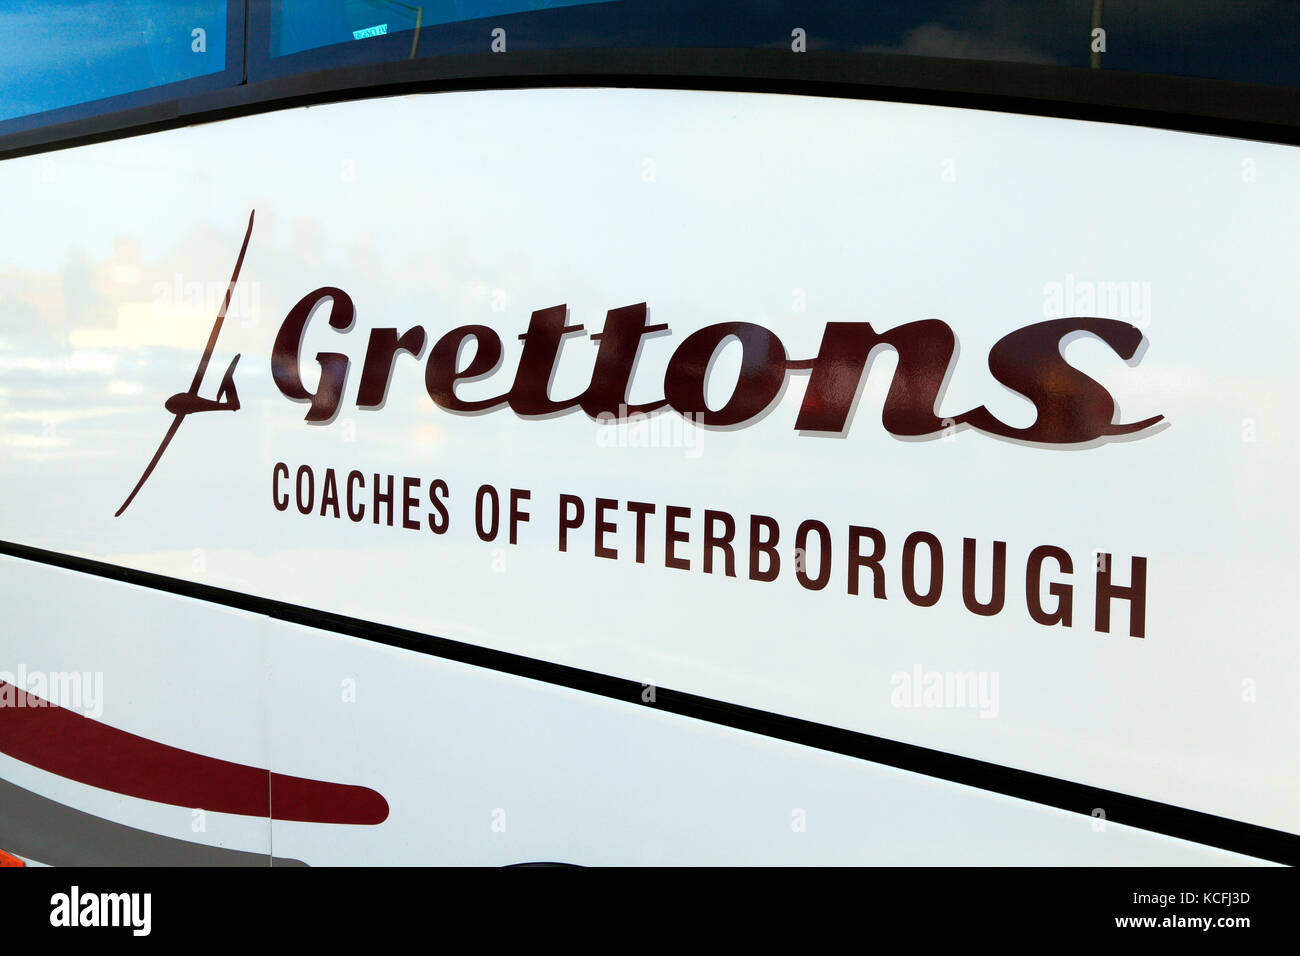 Grettons entraîneurs, de Peterborough, en autocar, excursions, voyage, excursion, excursions, vacances, vacances, voyage d'entreprise, entreprises, transports, bus Banque D'Images